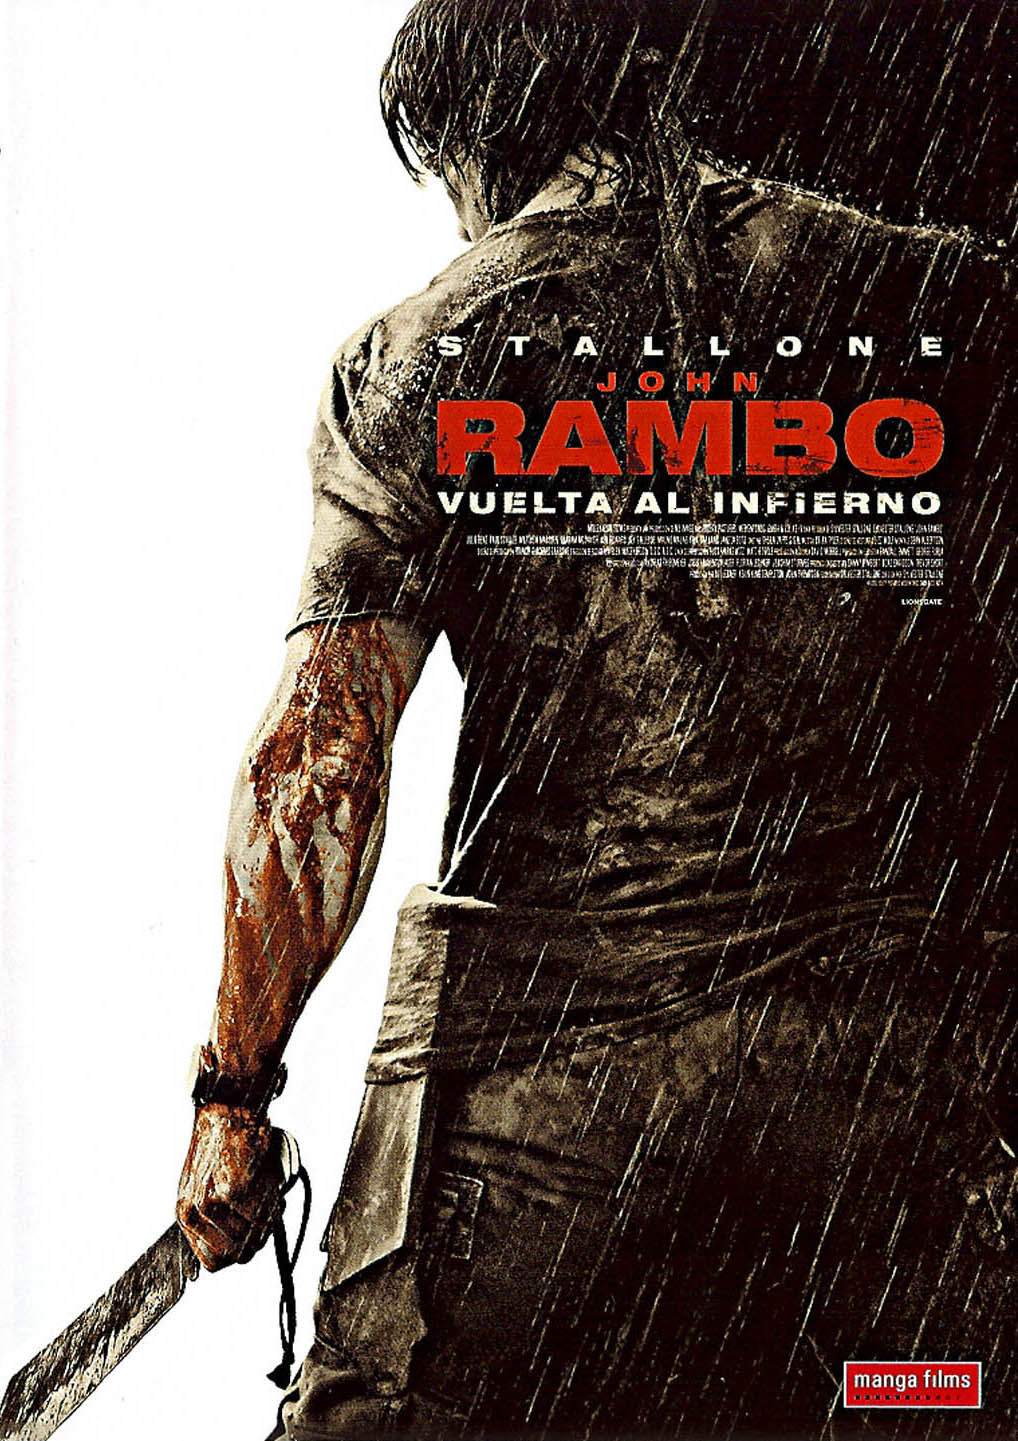 caratula frontal y slim de la película John Rambo